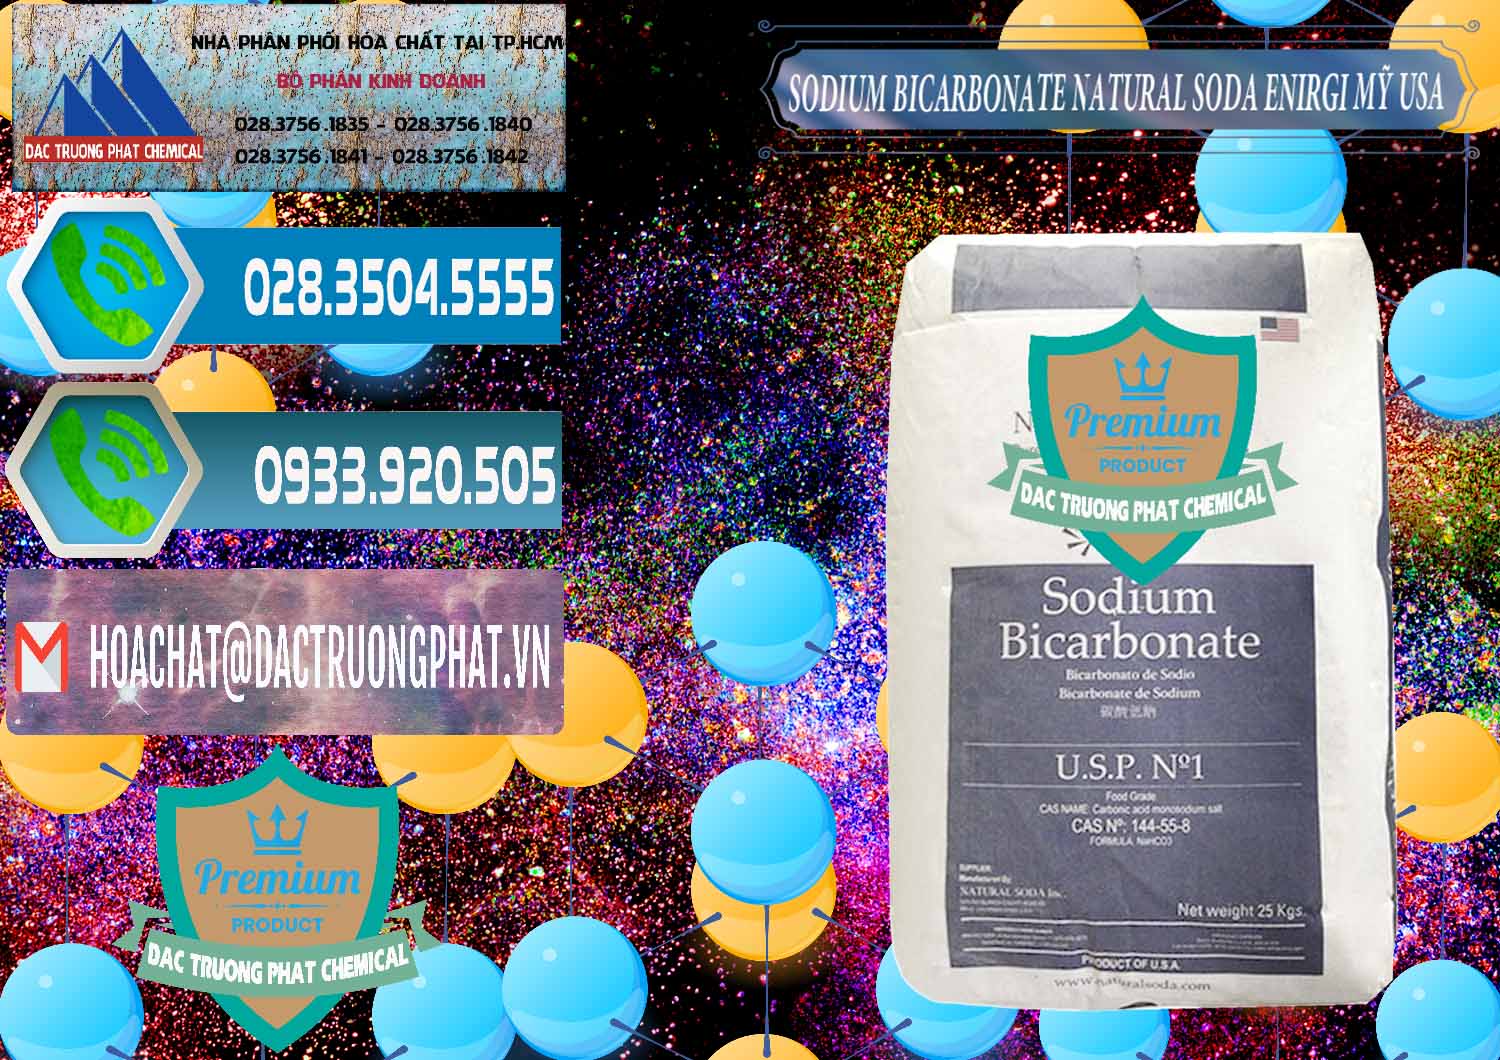 Công ty cung ứng _ bán Sodium Bicarbonate – Bicar NaHCO3 Food Grade Natural Soda Enirgi Mỹ USA - 0257 - Nơi phân phối và cung cấp hóa chất tại TP.HCM - congtyhoachat.net